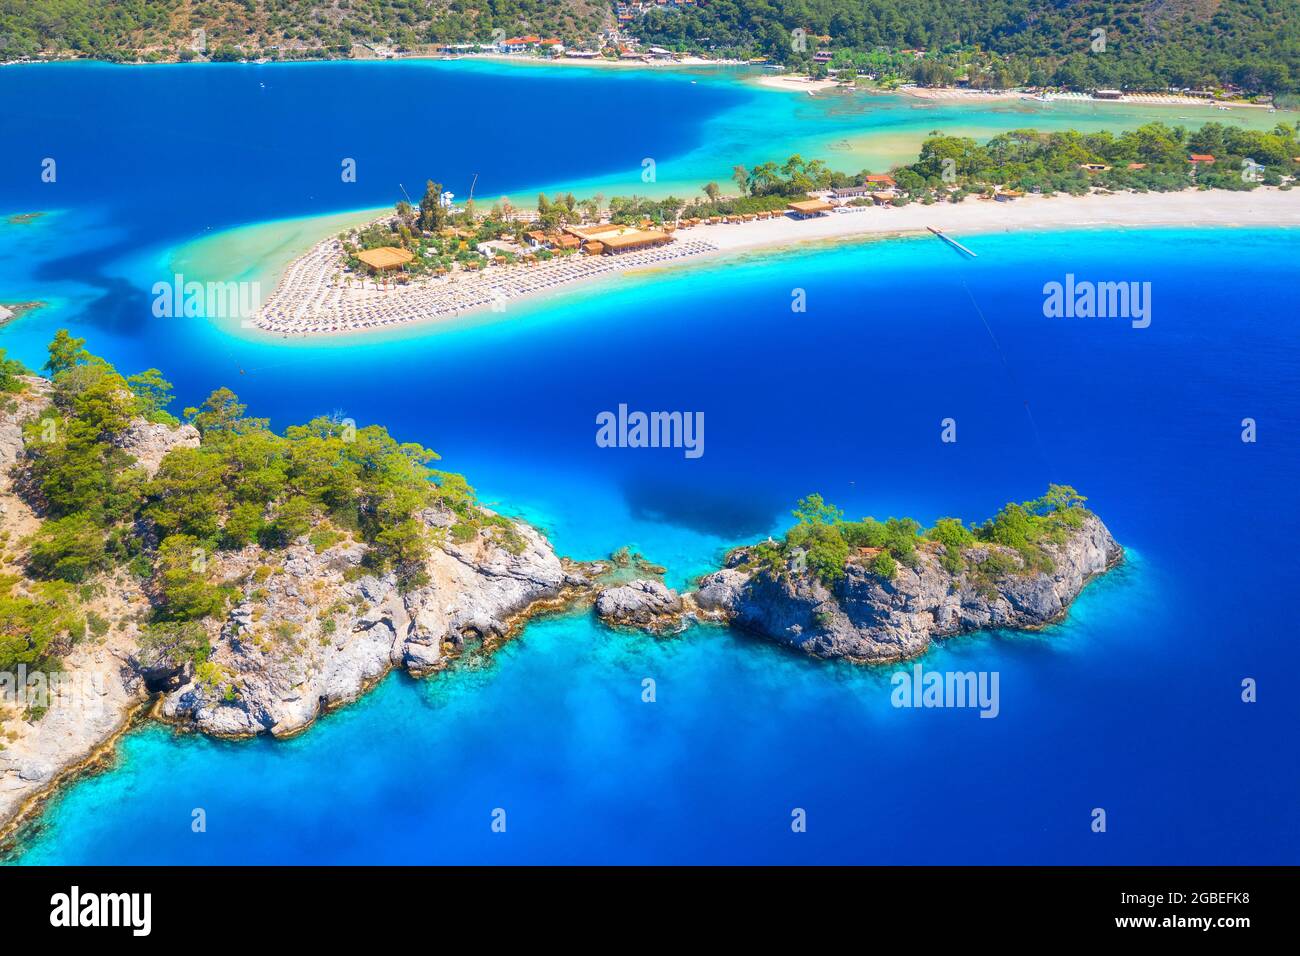 Vista aerea della baia del mare, roccia, spiaggia sabbiosa, alberi, montagna Foto Stock